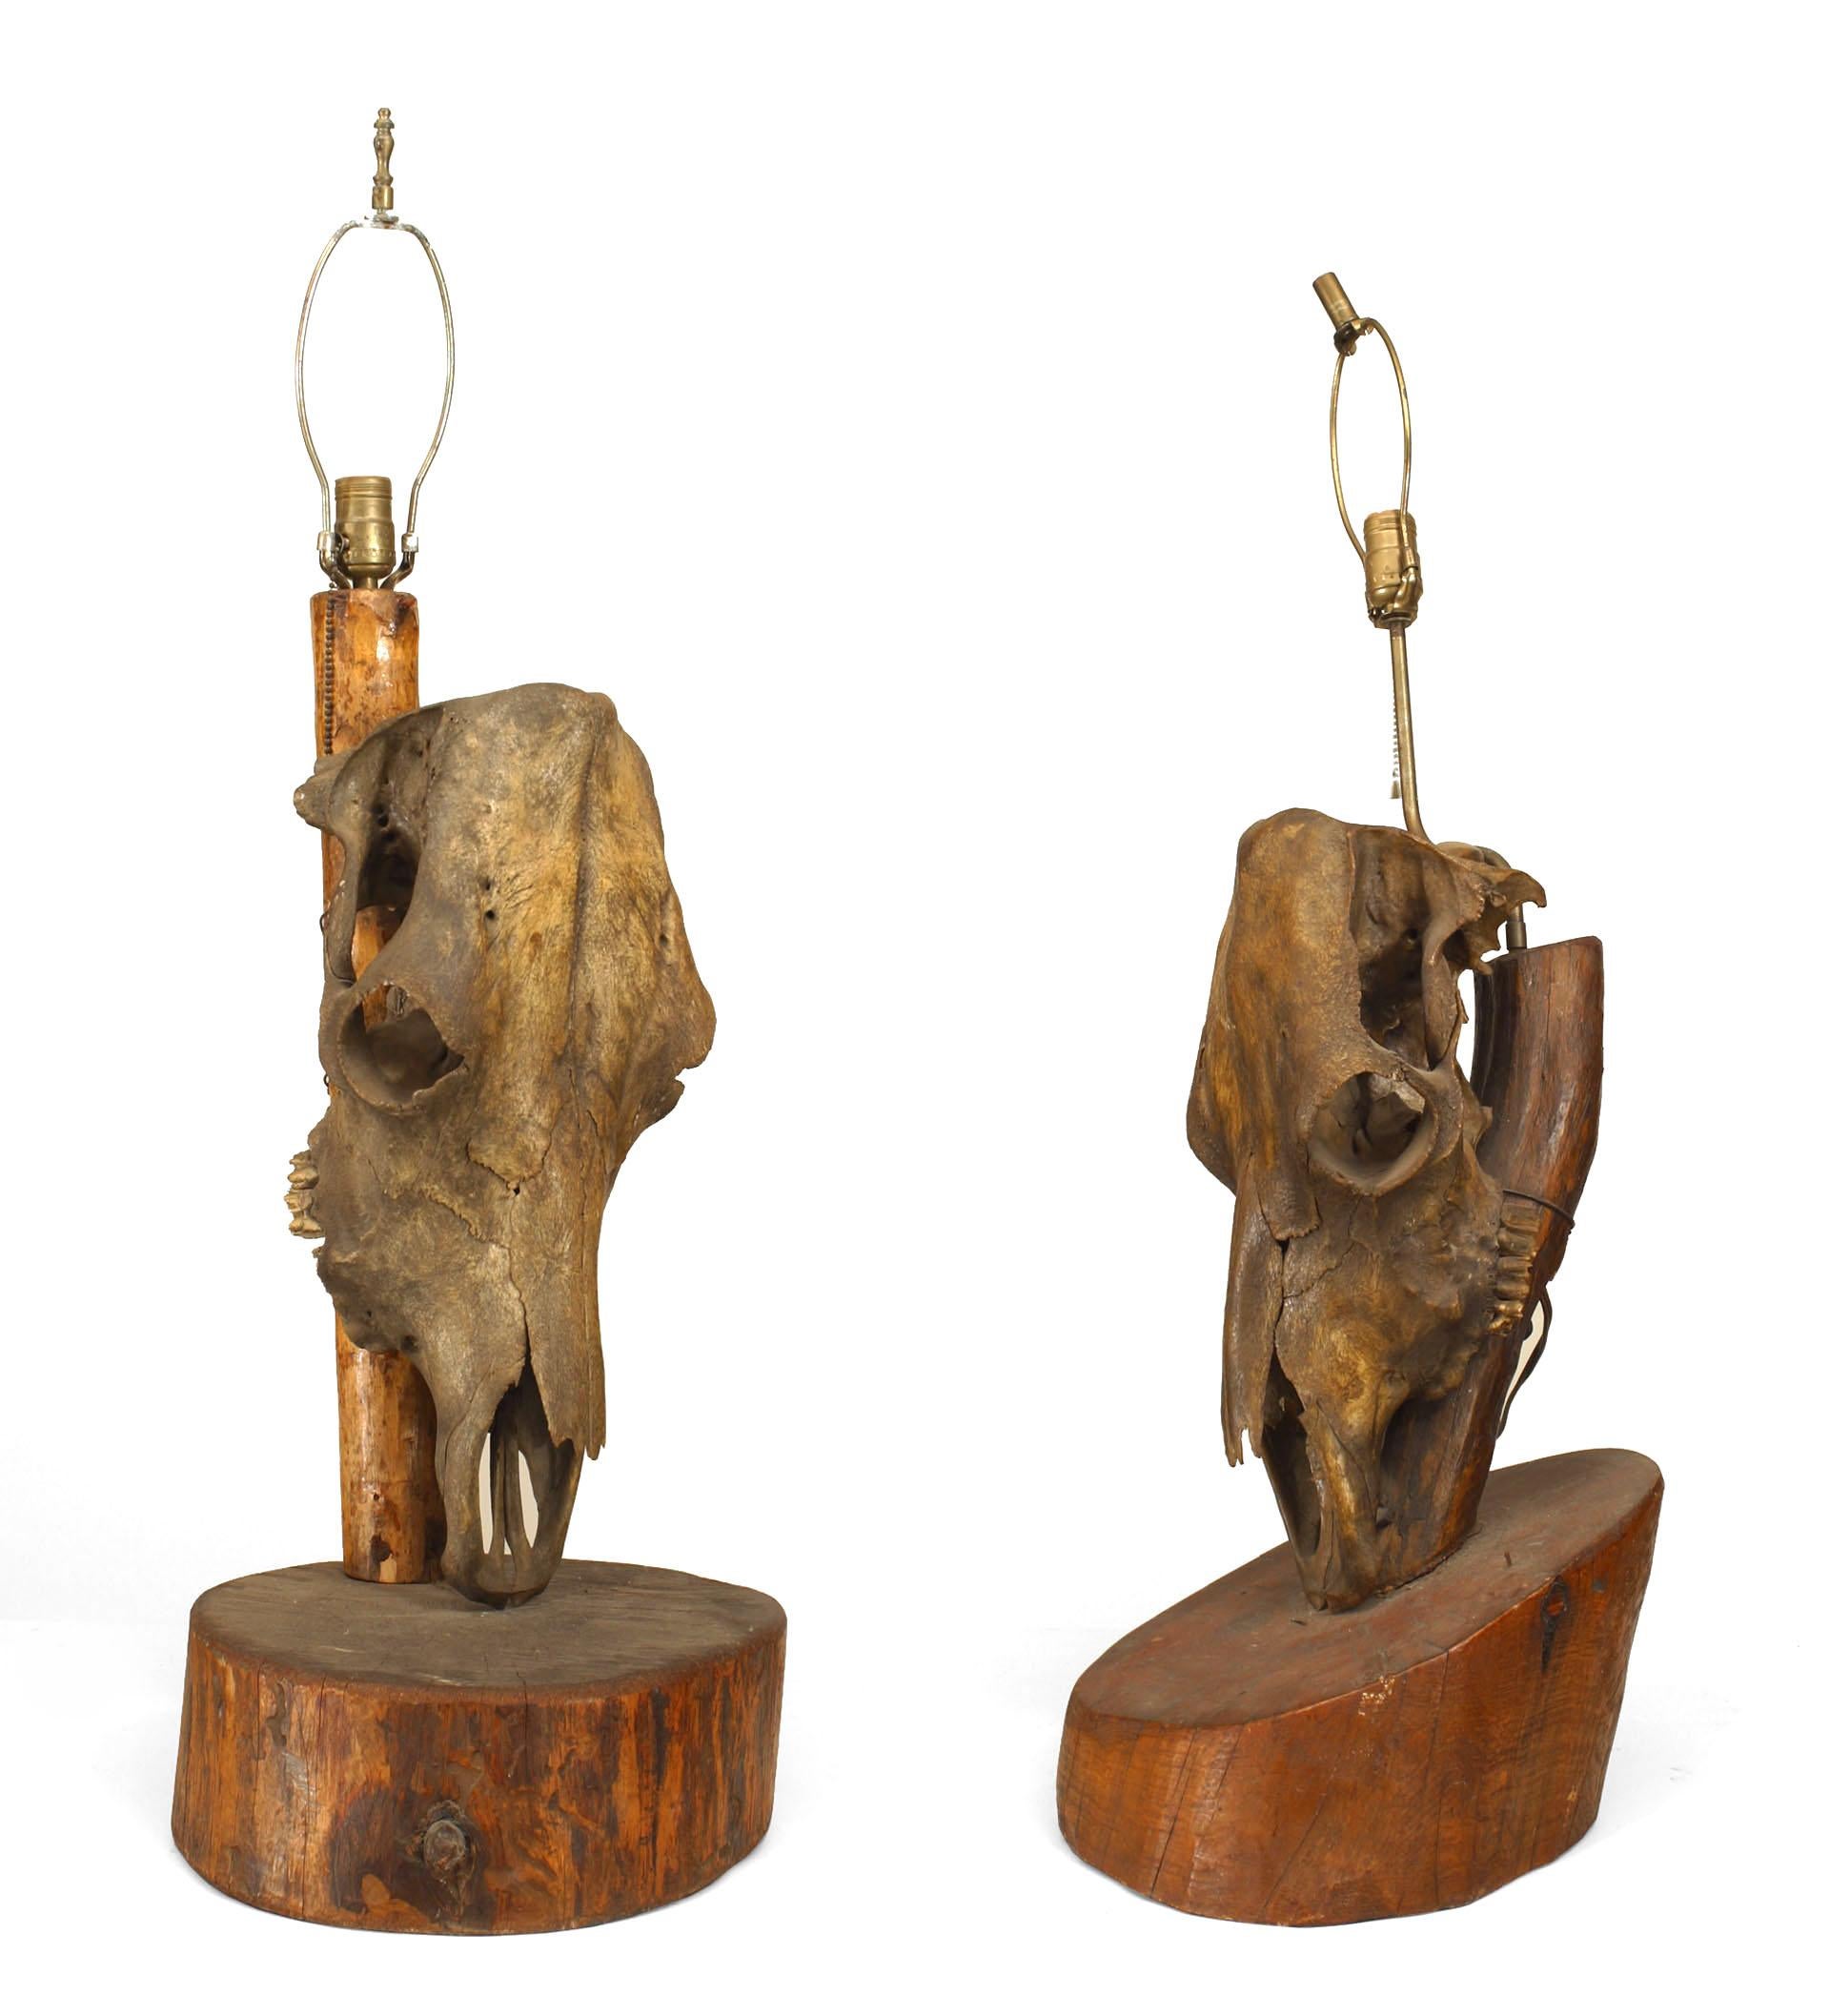 Paire de lampes de table rustiques américaines (20ème siècle) avec des crânes de chevaux montés sur une base en bois de forme libre (attribuée à MOLESWORTH)(PRIX DE LA Paire).
